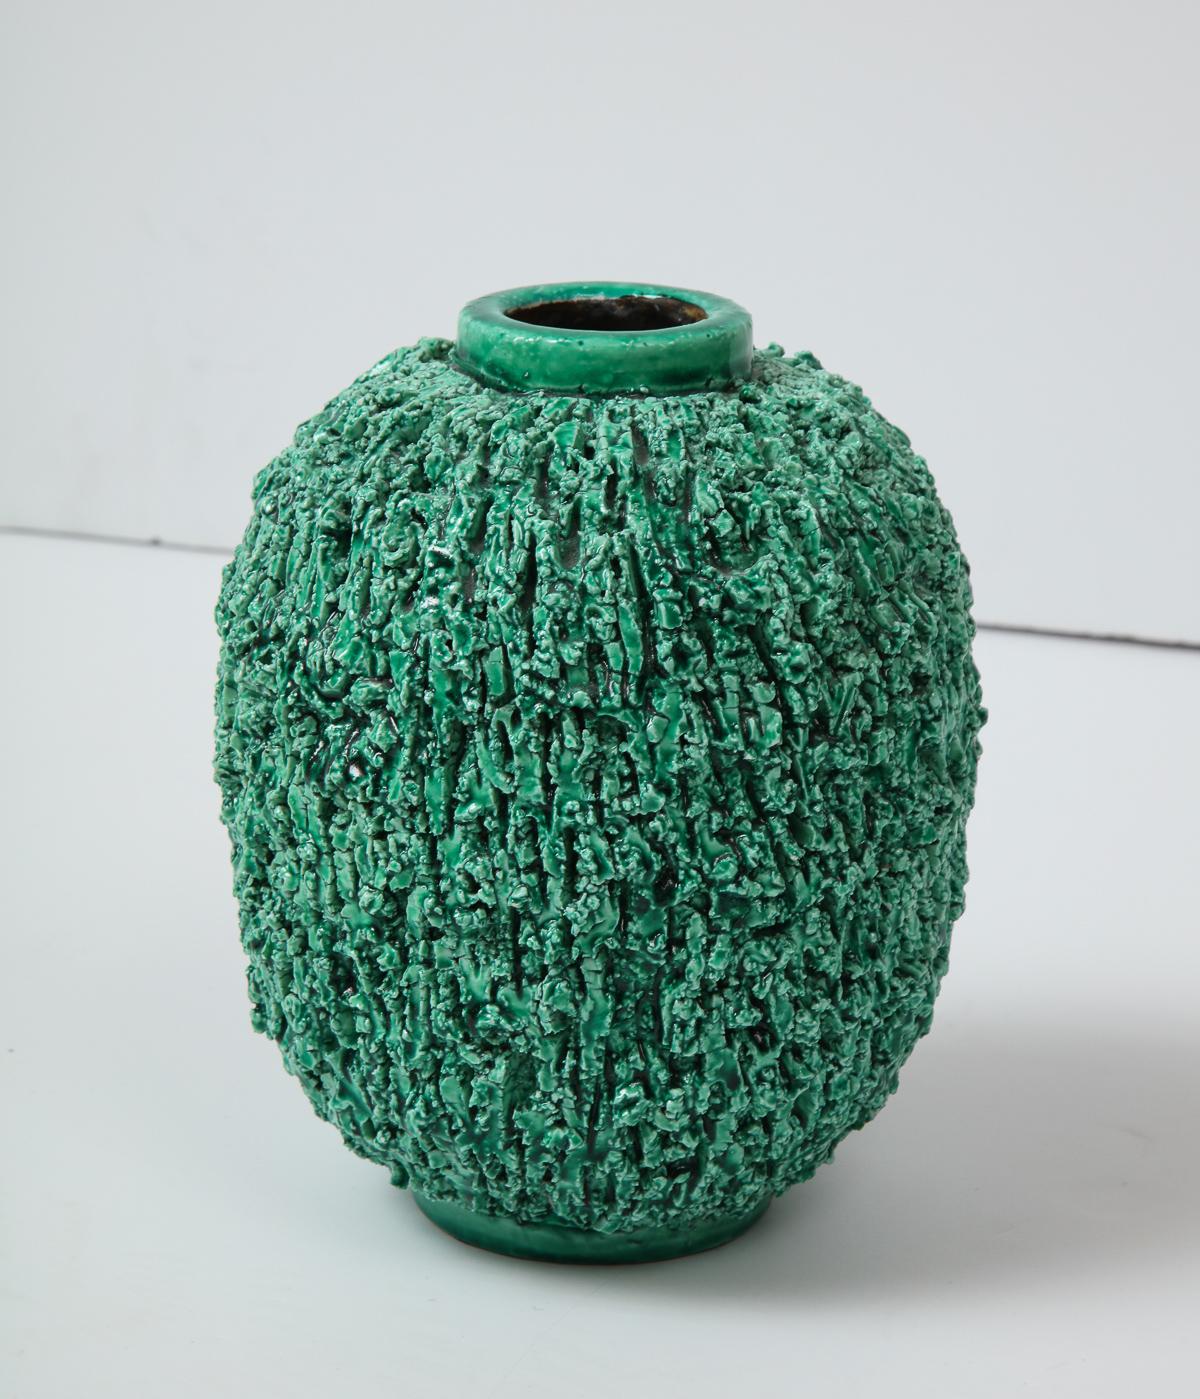 Hand-Crafted Ceramic Vase by Gunnar Nylund, Scandinavian, Green Vase, 